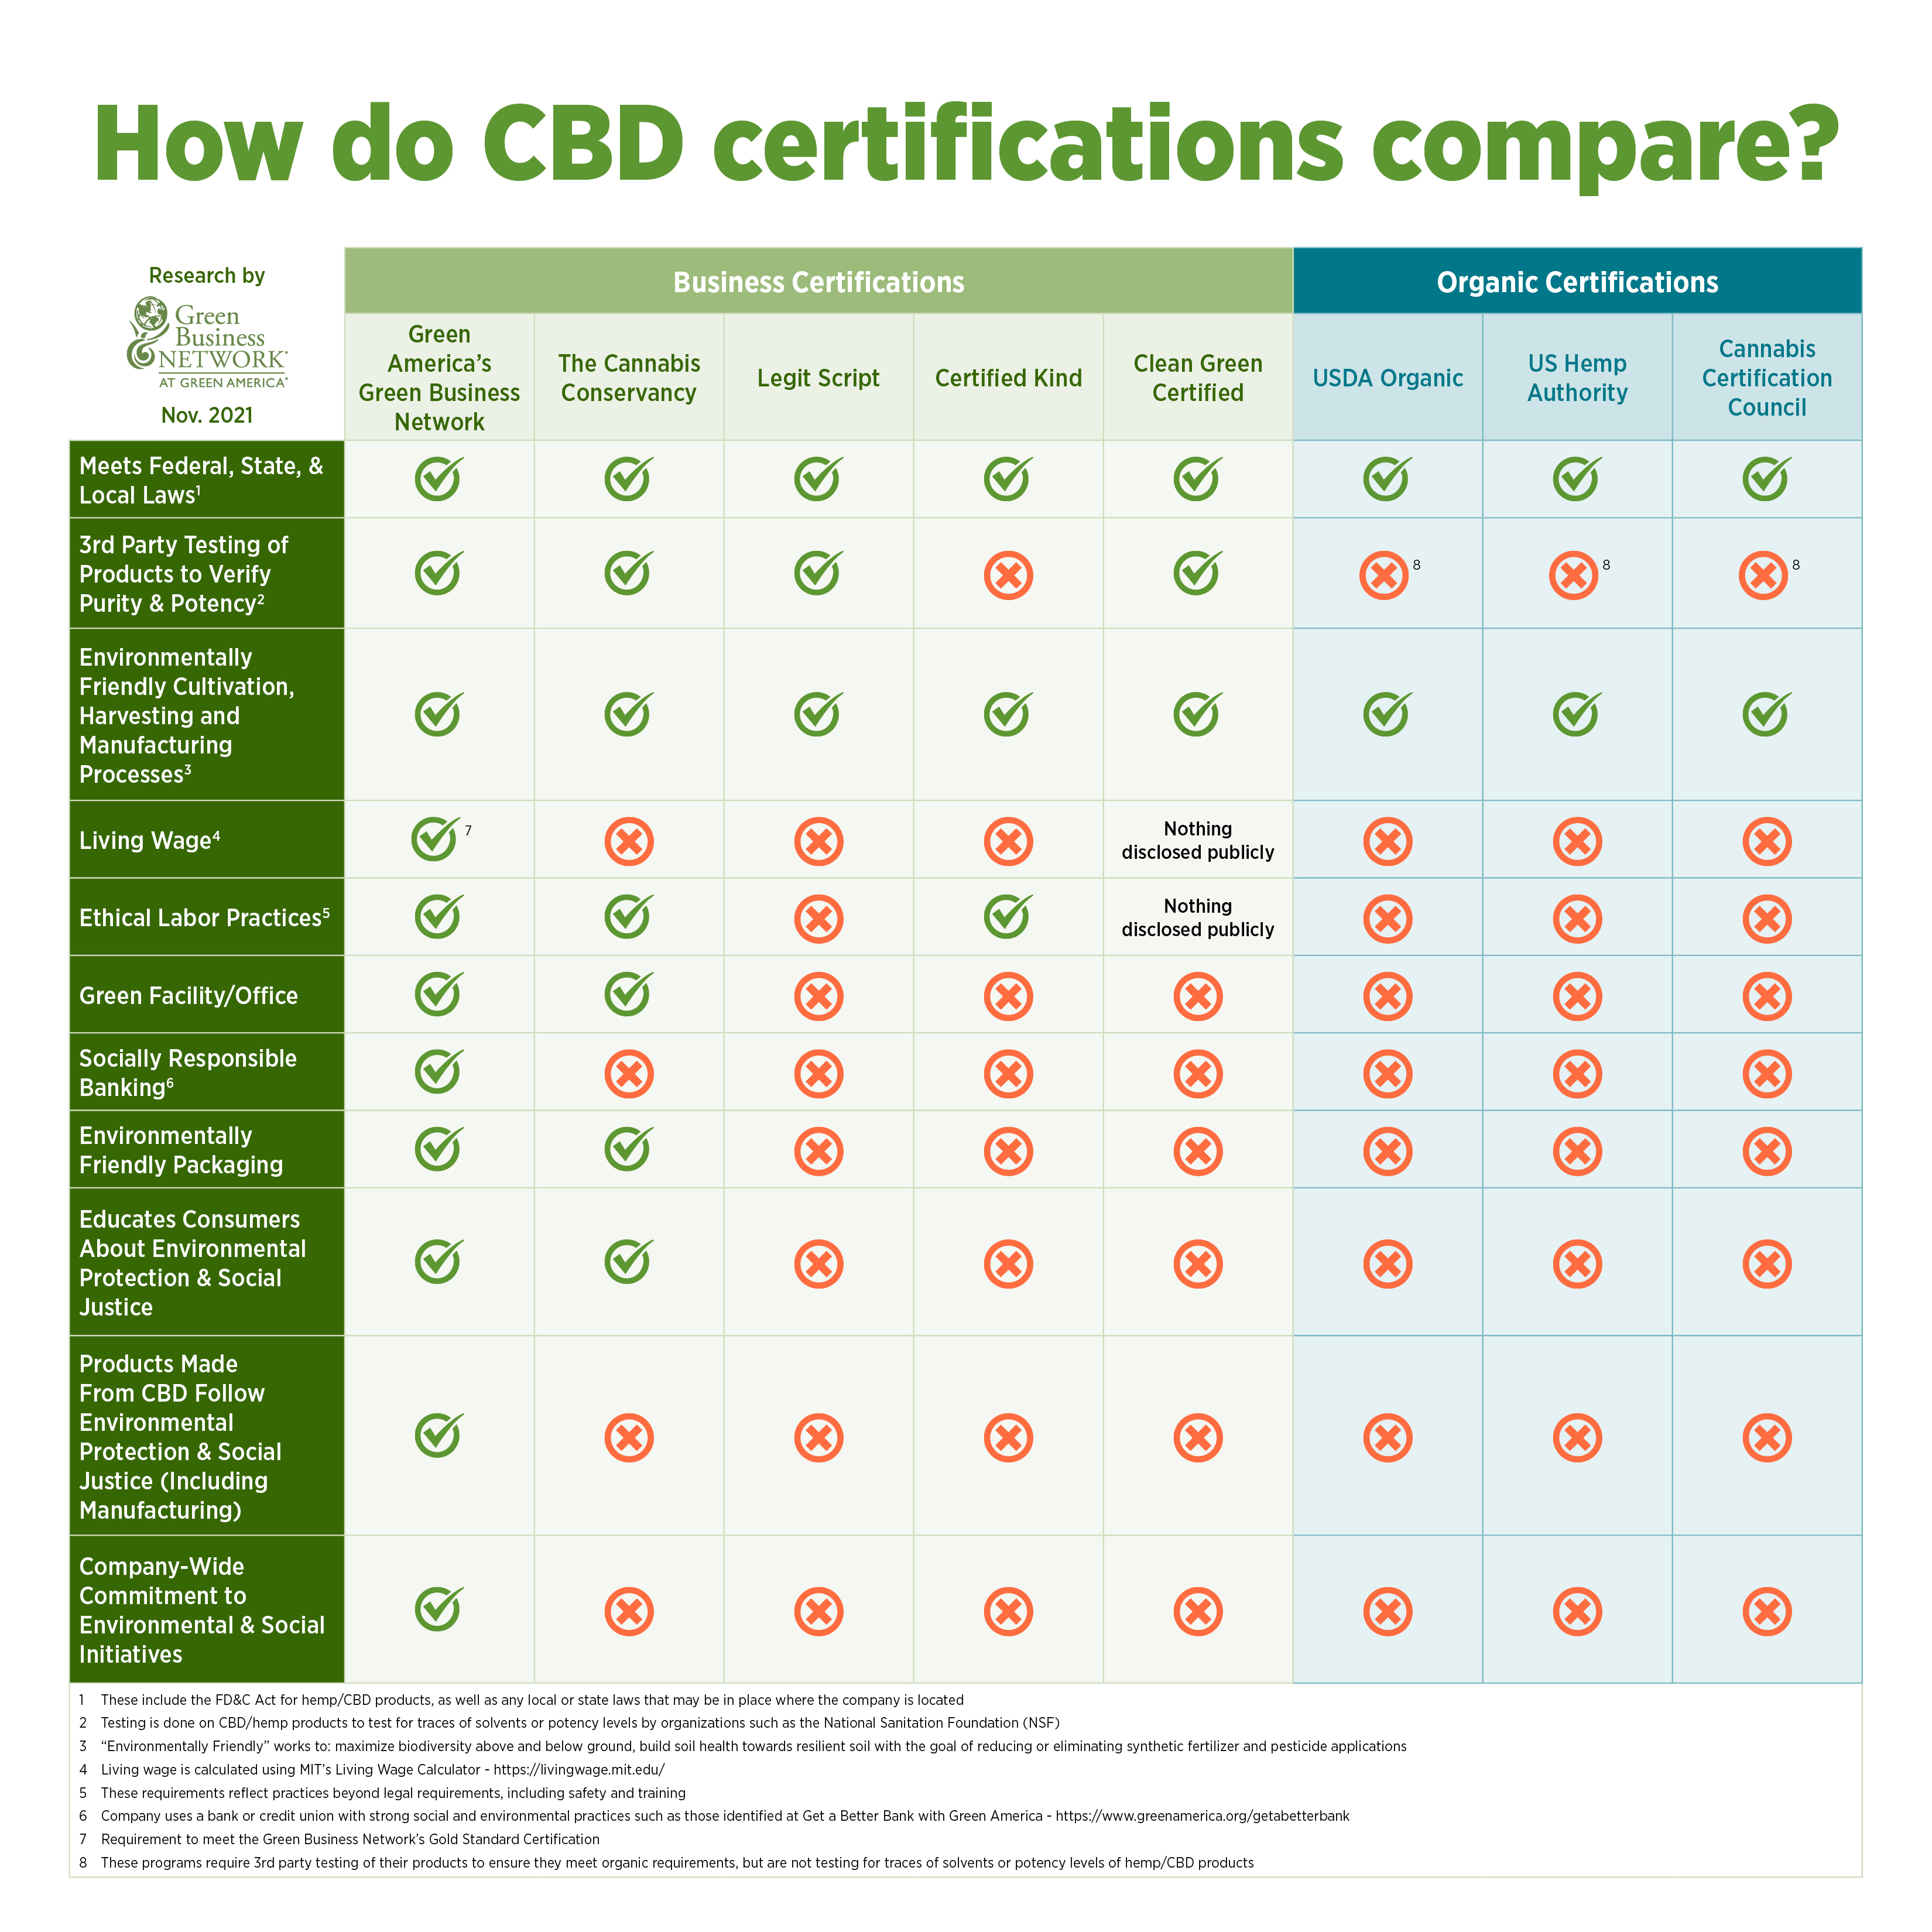 How do CBD certifications compare?